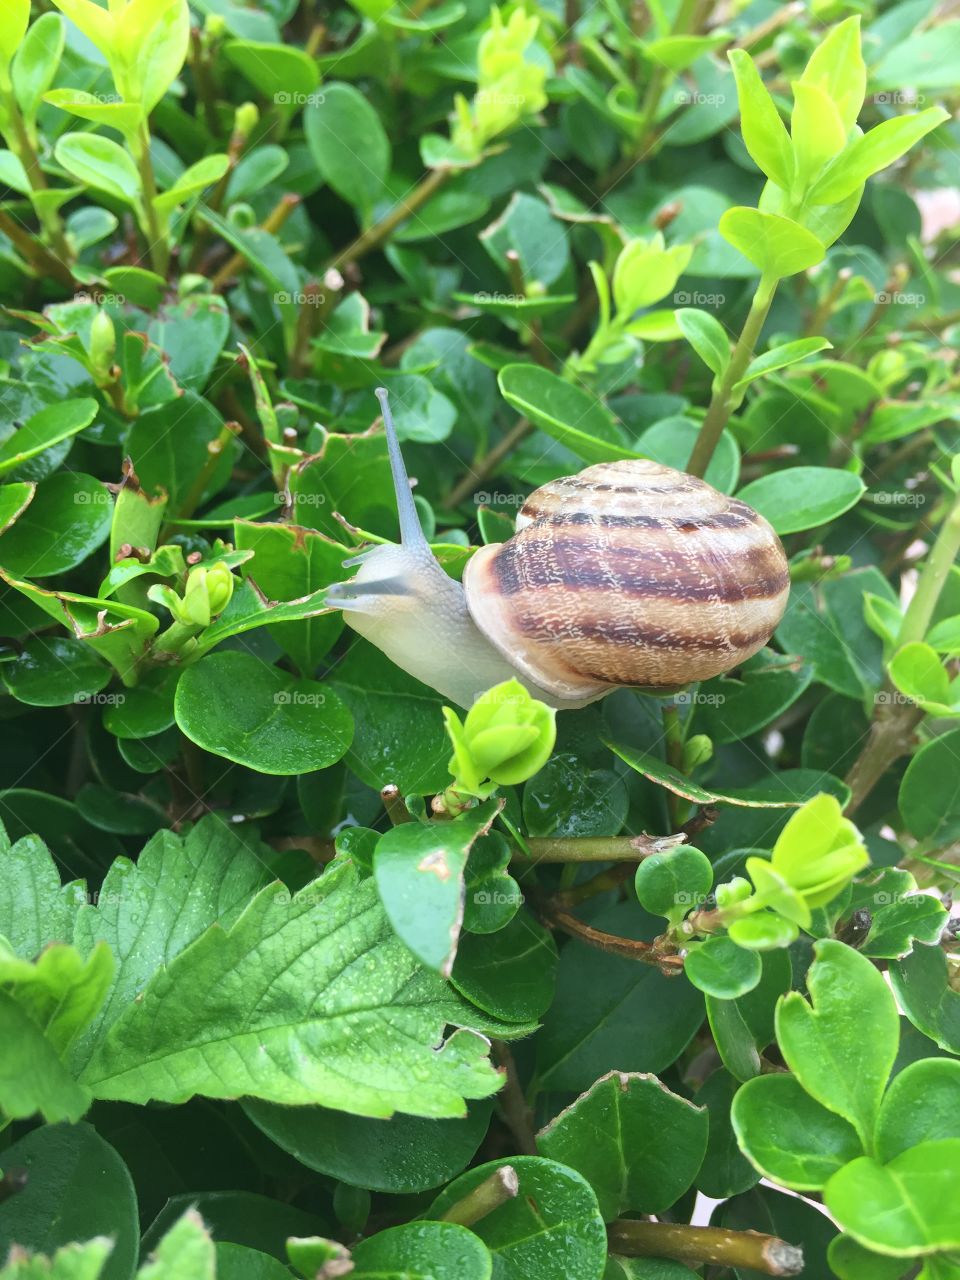 Summer snail